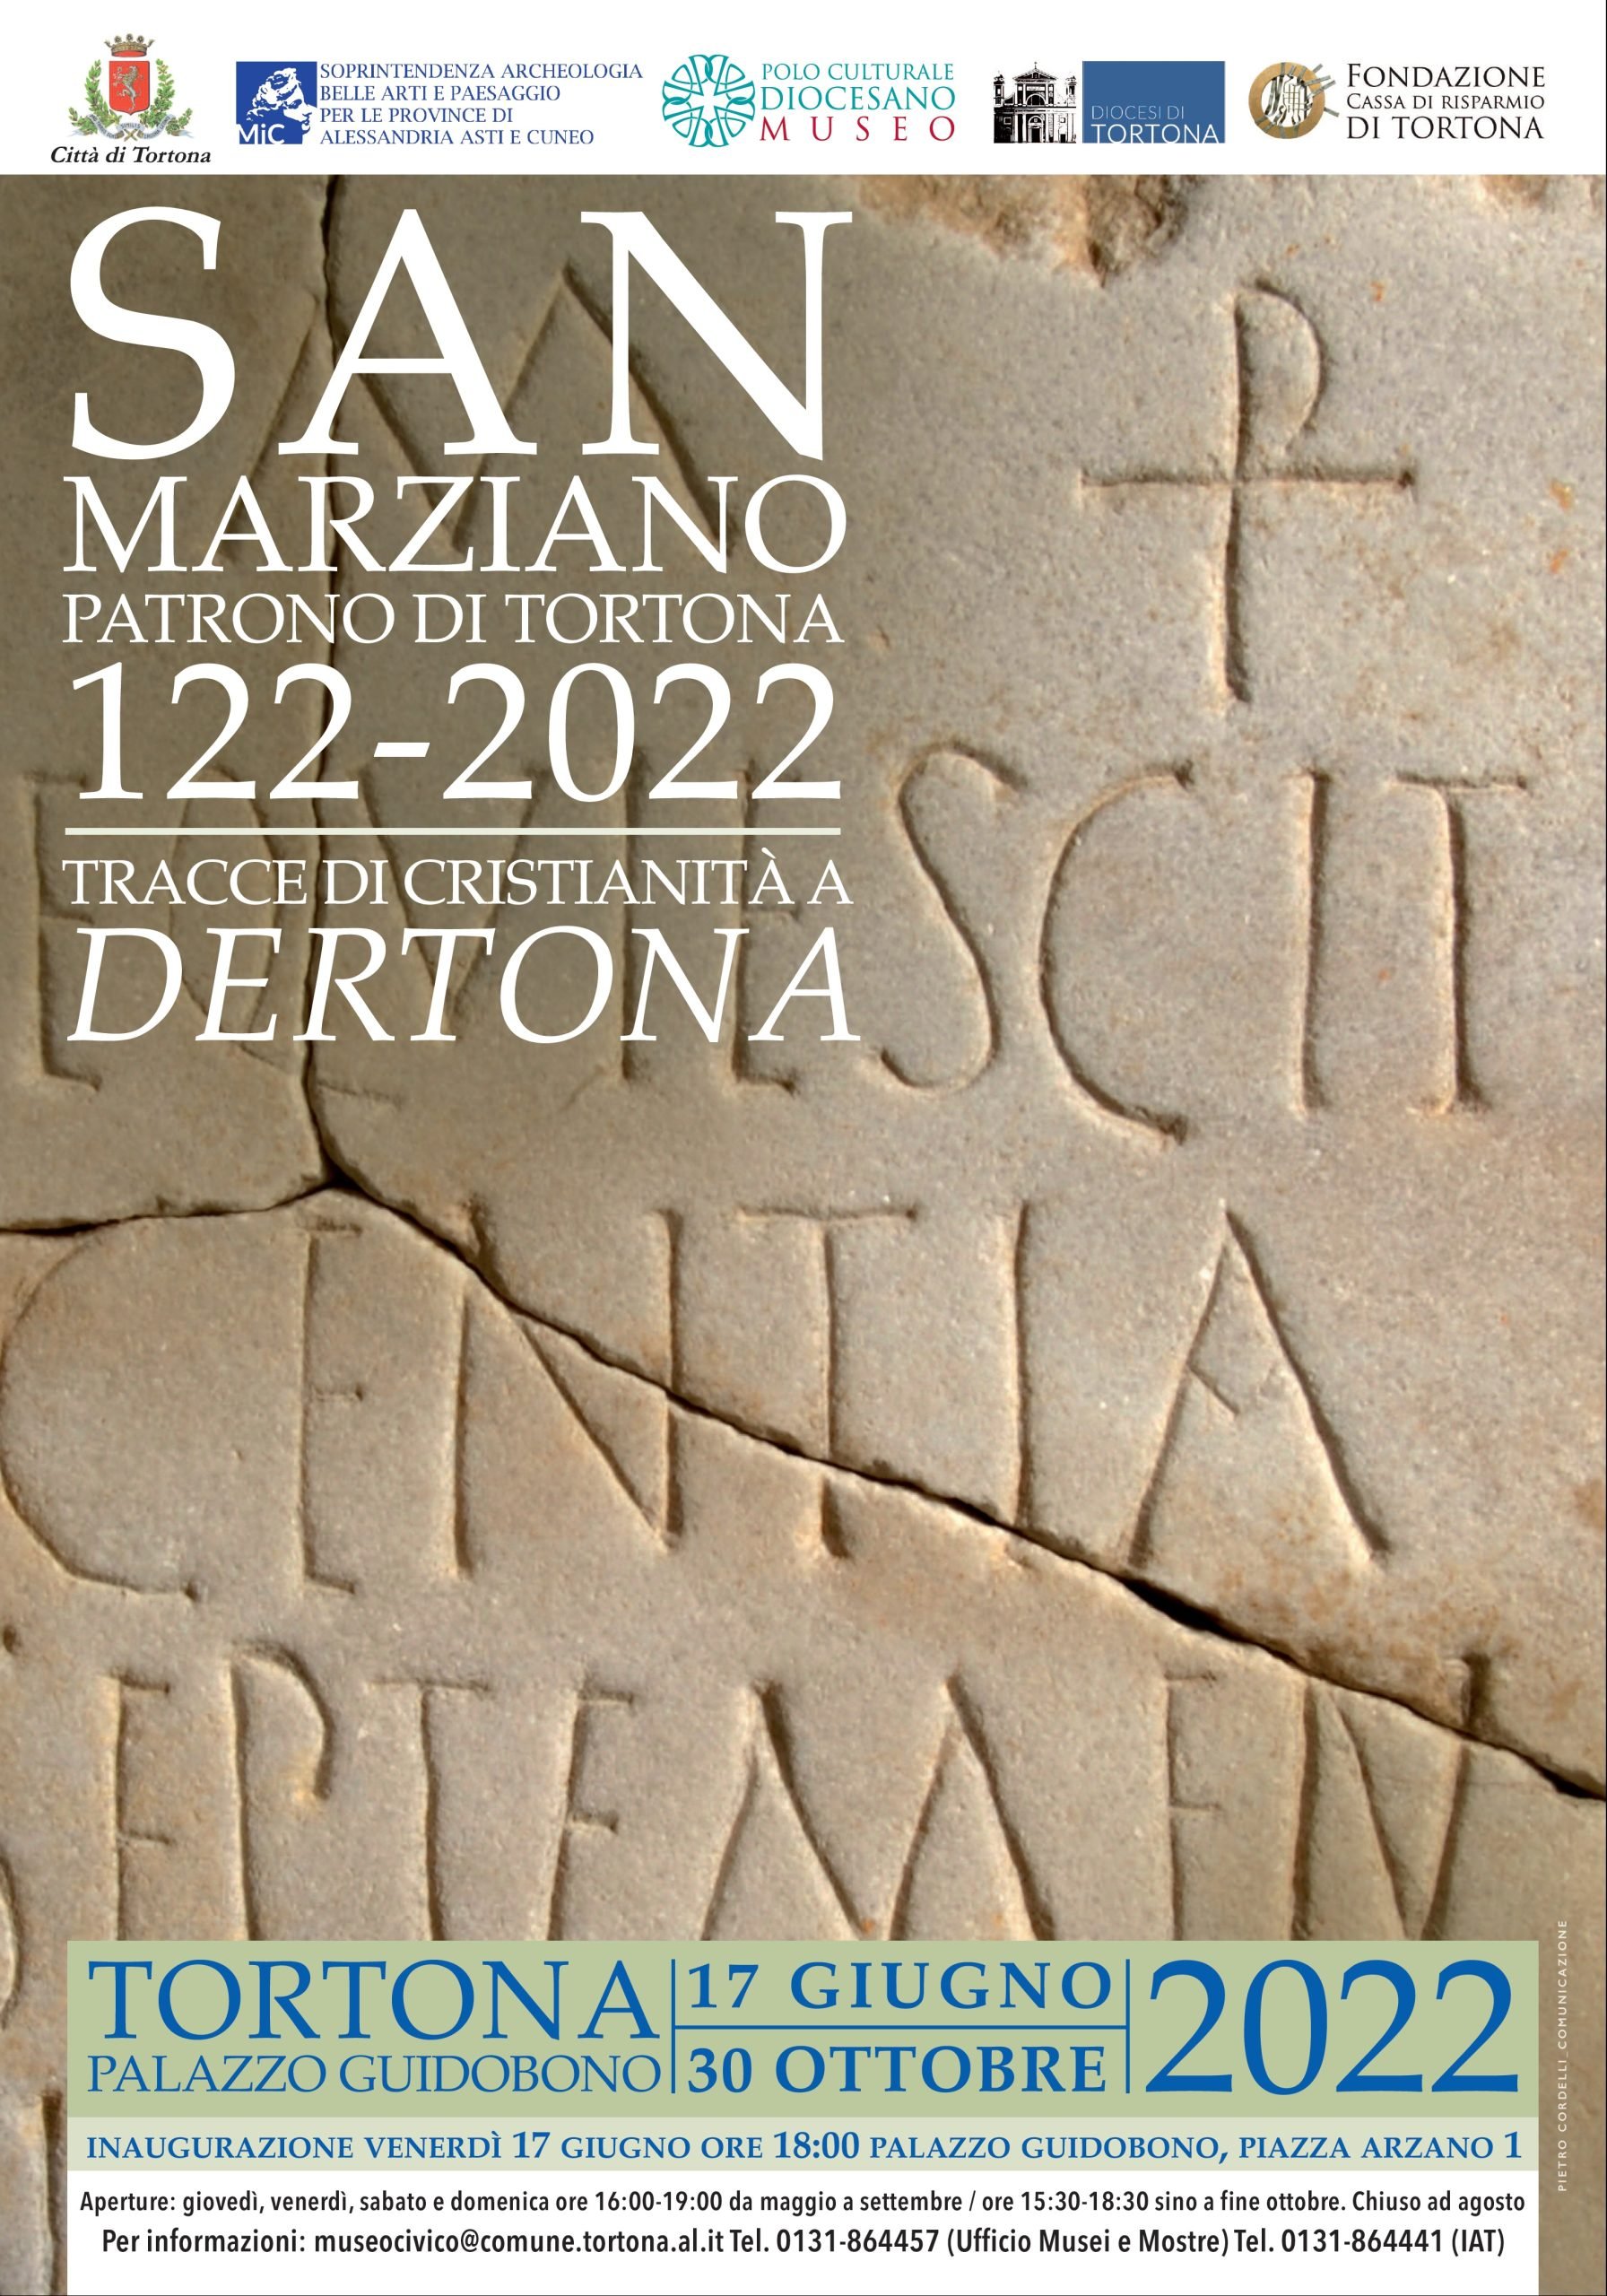 Dal 17 giugno al 30 ottobre a Palazzo Guidobono “San Marziano, patrono di Tortona 122-2022”